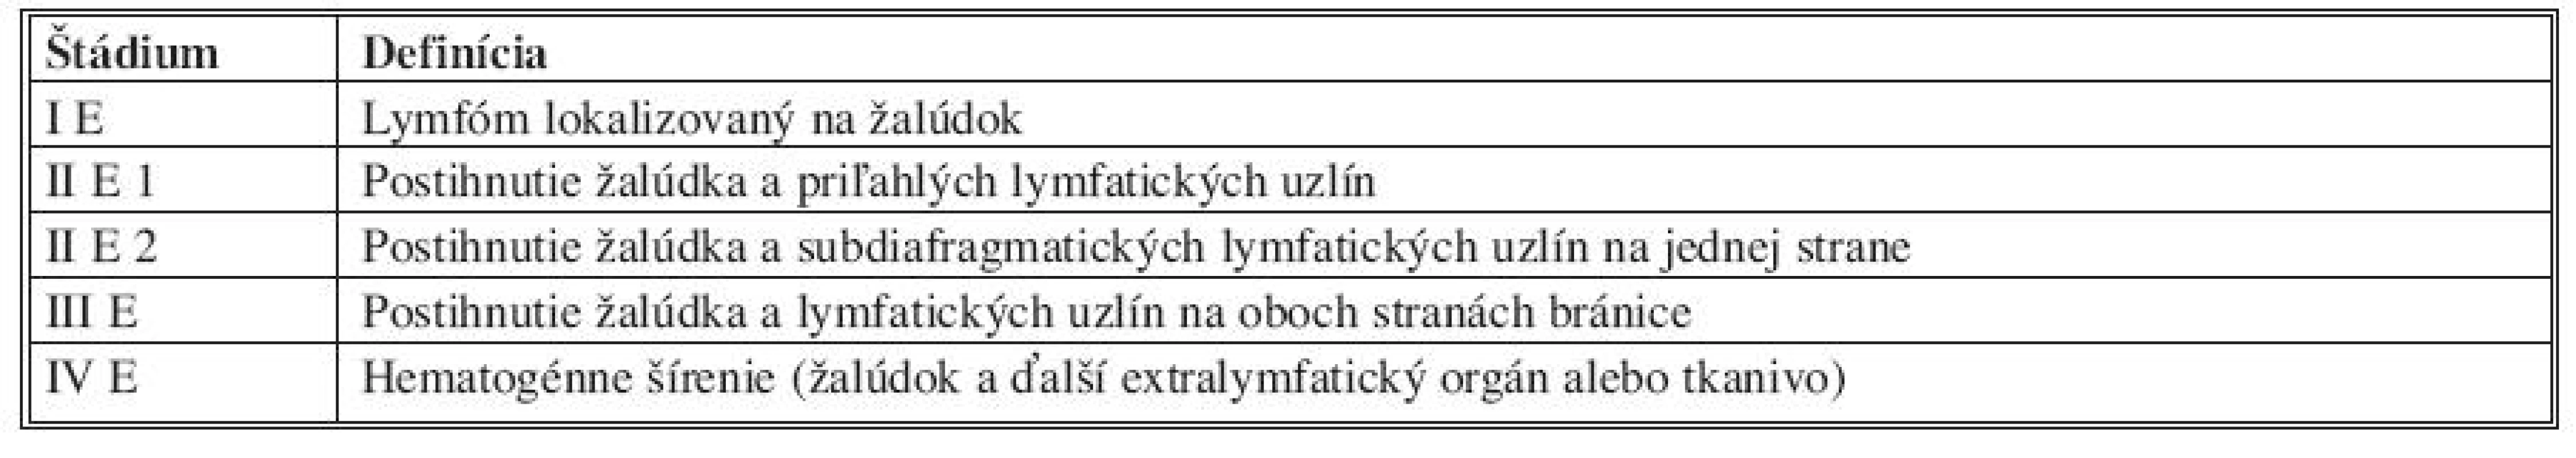 Klinická klasifikácia lymfómov žalúdka podľa Musshoffa (Za číslom štádia sa uvádza index písmenom: E = extranodal, S = splenic, A = asymptomatic, B = symptomatic) [8]
Tab. 2. Clinical classification of gastric lymphomas according to Musshoff (stages are followed by letters: E = extranodal, S = splenic, A = asymptomatic, B = symptomatic)